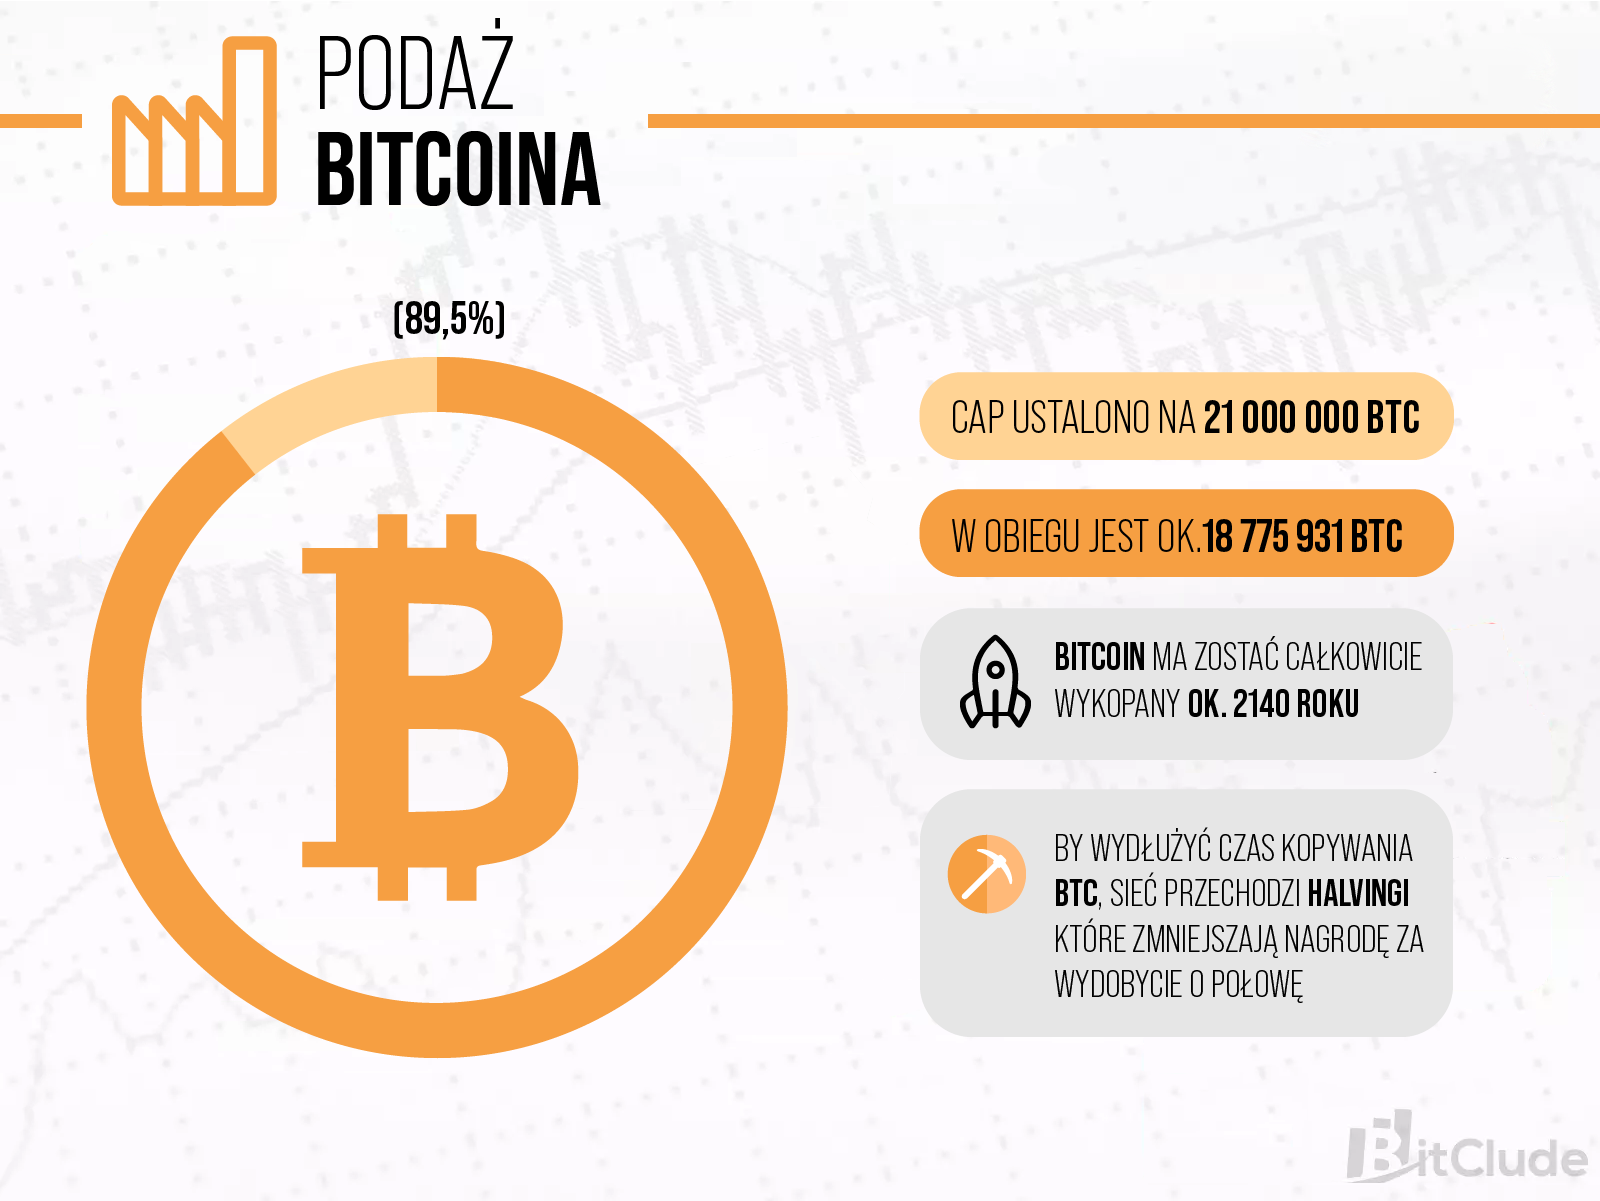 Maksymalna podaż Bitcoina została ustalona na 21000000 BTC. Bitcoin zostanie całkowicie wydobyty około 2140 roku.